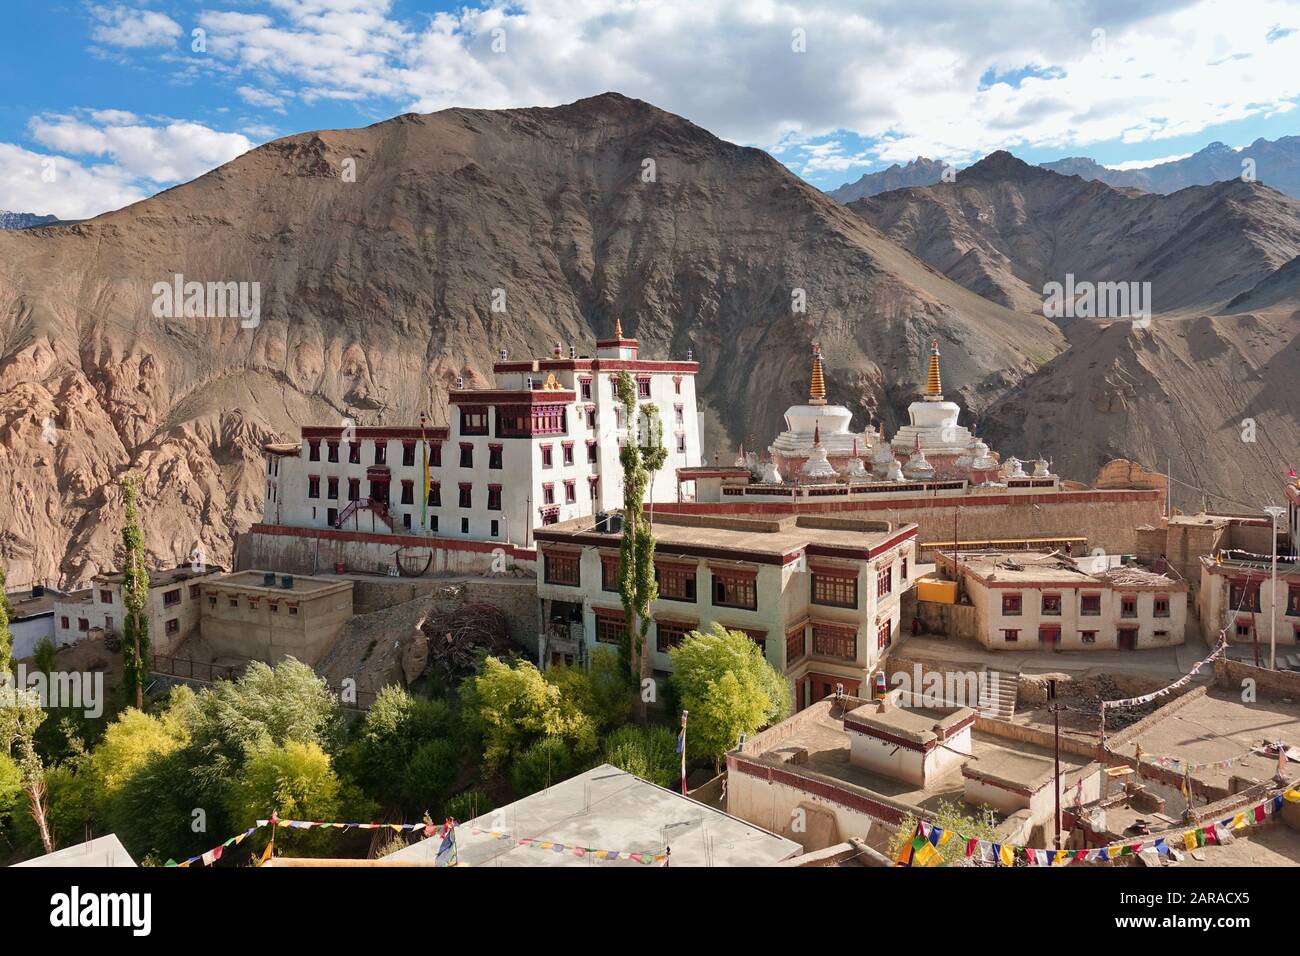 Monastère de Lamayuru ou de Yuru monastère bouddhiste tibétain à Lamayouro, district de Leh, Ladakh, Inde - 2019 Banque D'Images